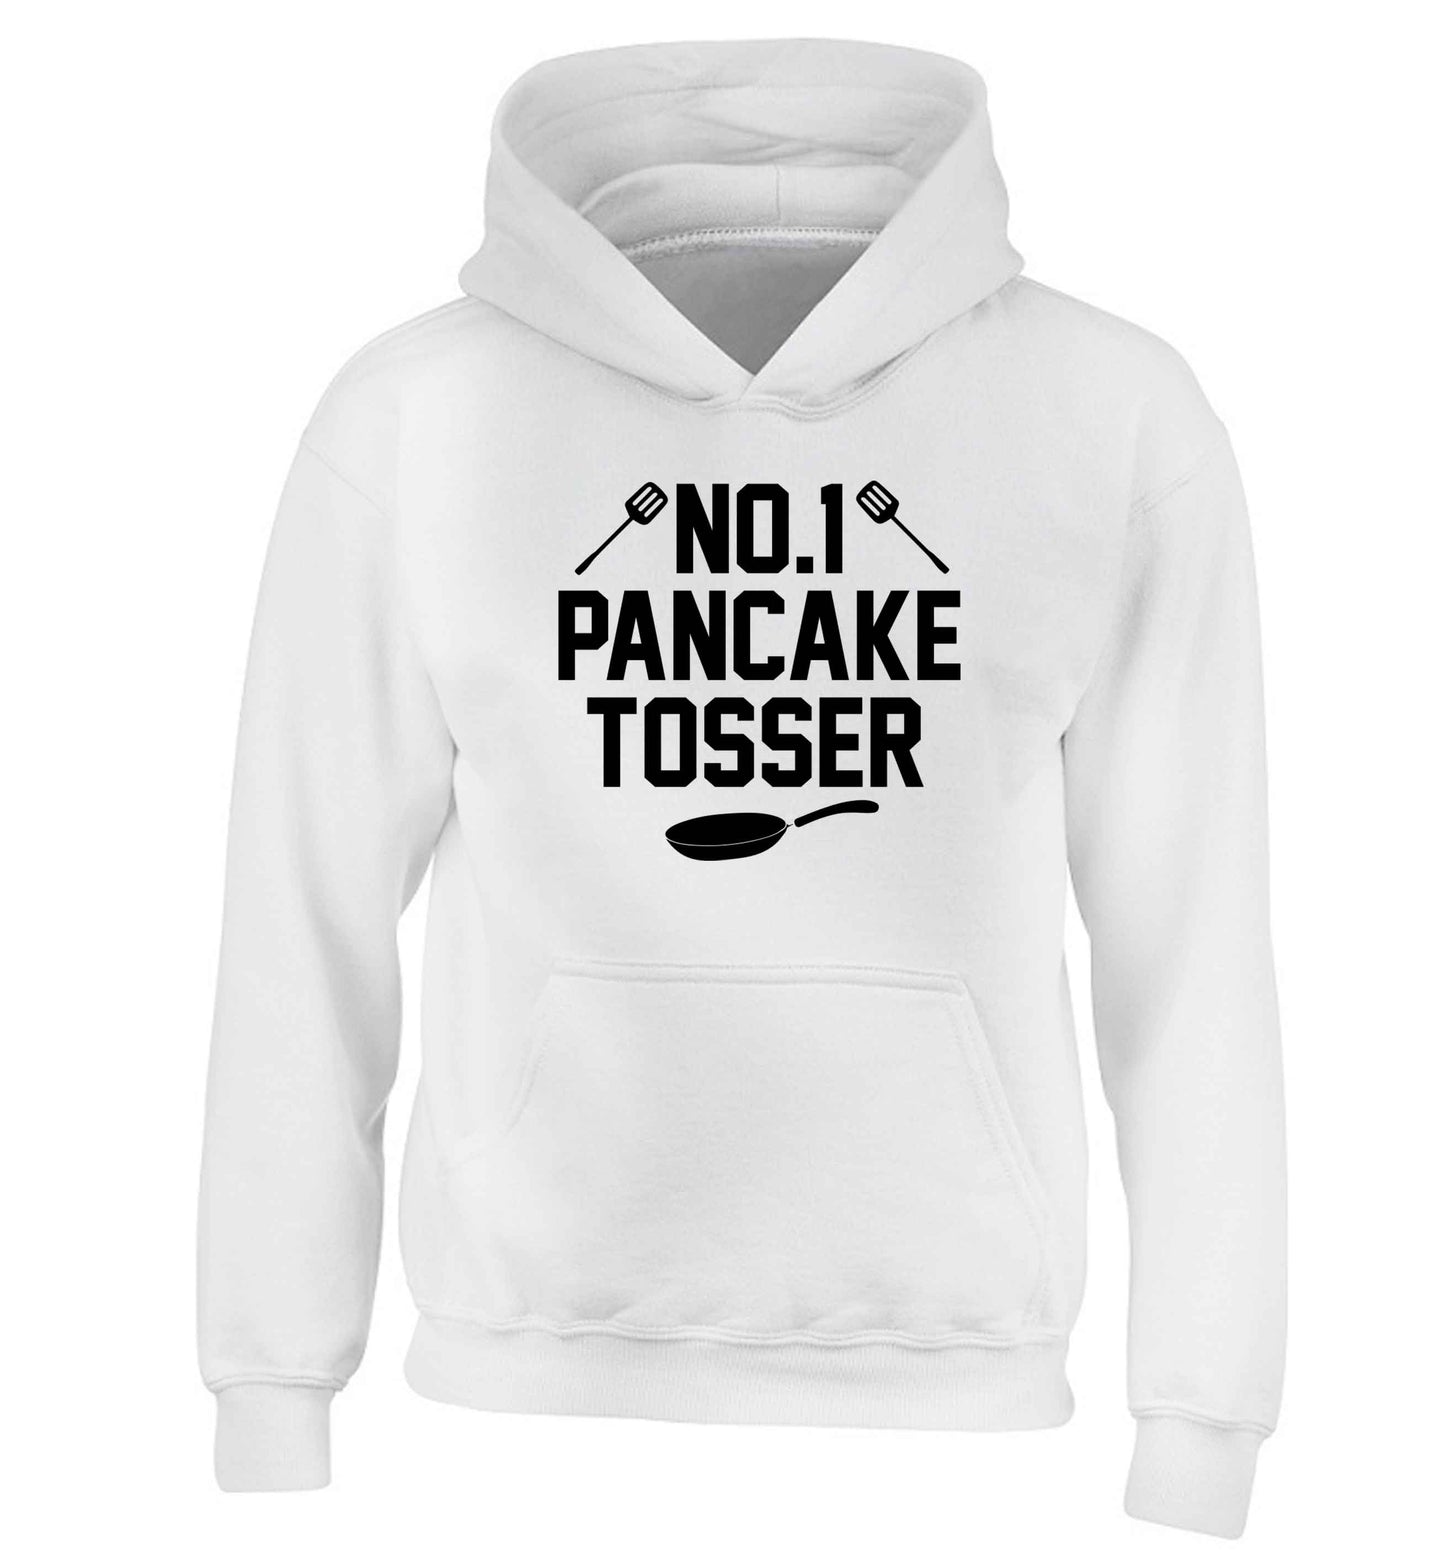 No.1 Pancake tosser children's white hoodie 12-13 Years